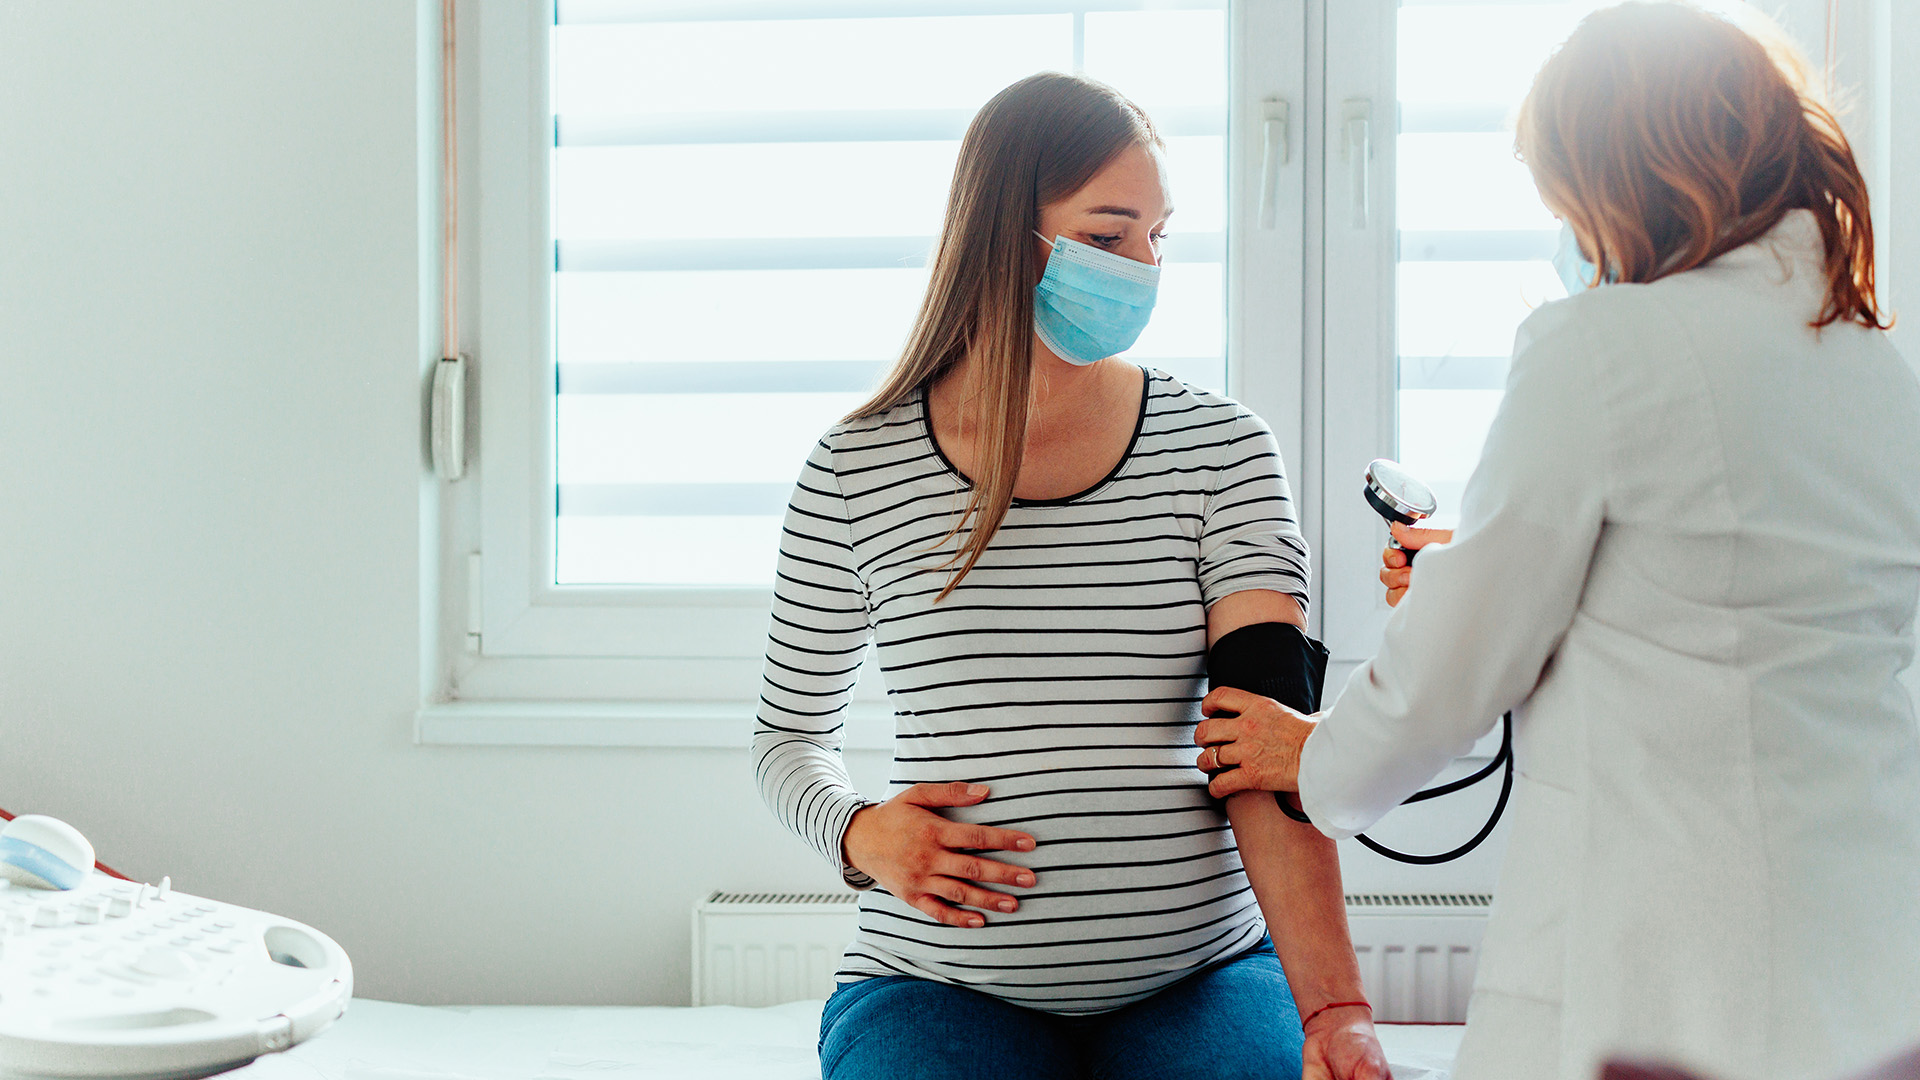 La técnica utilizada en el reciente estudio podrá servir para evaluar el impacto de la pandemia del COVID-19 en la mortalidad materna (Getty)